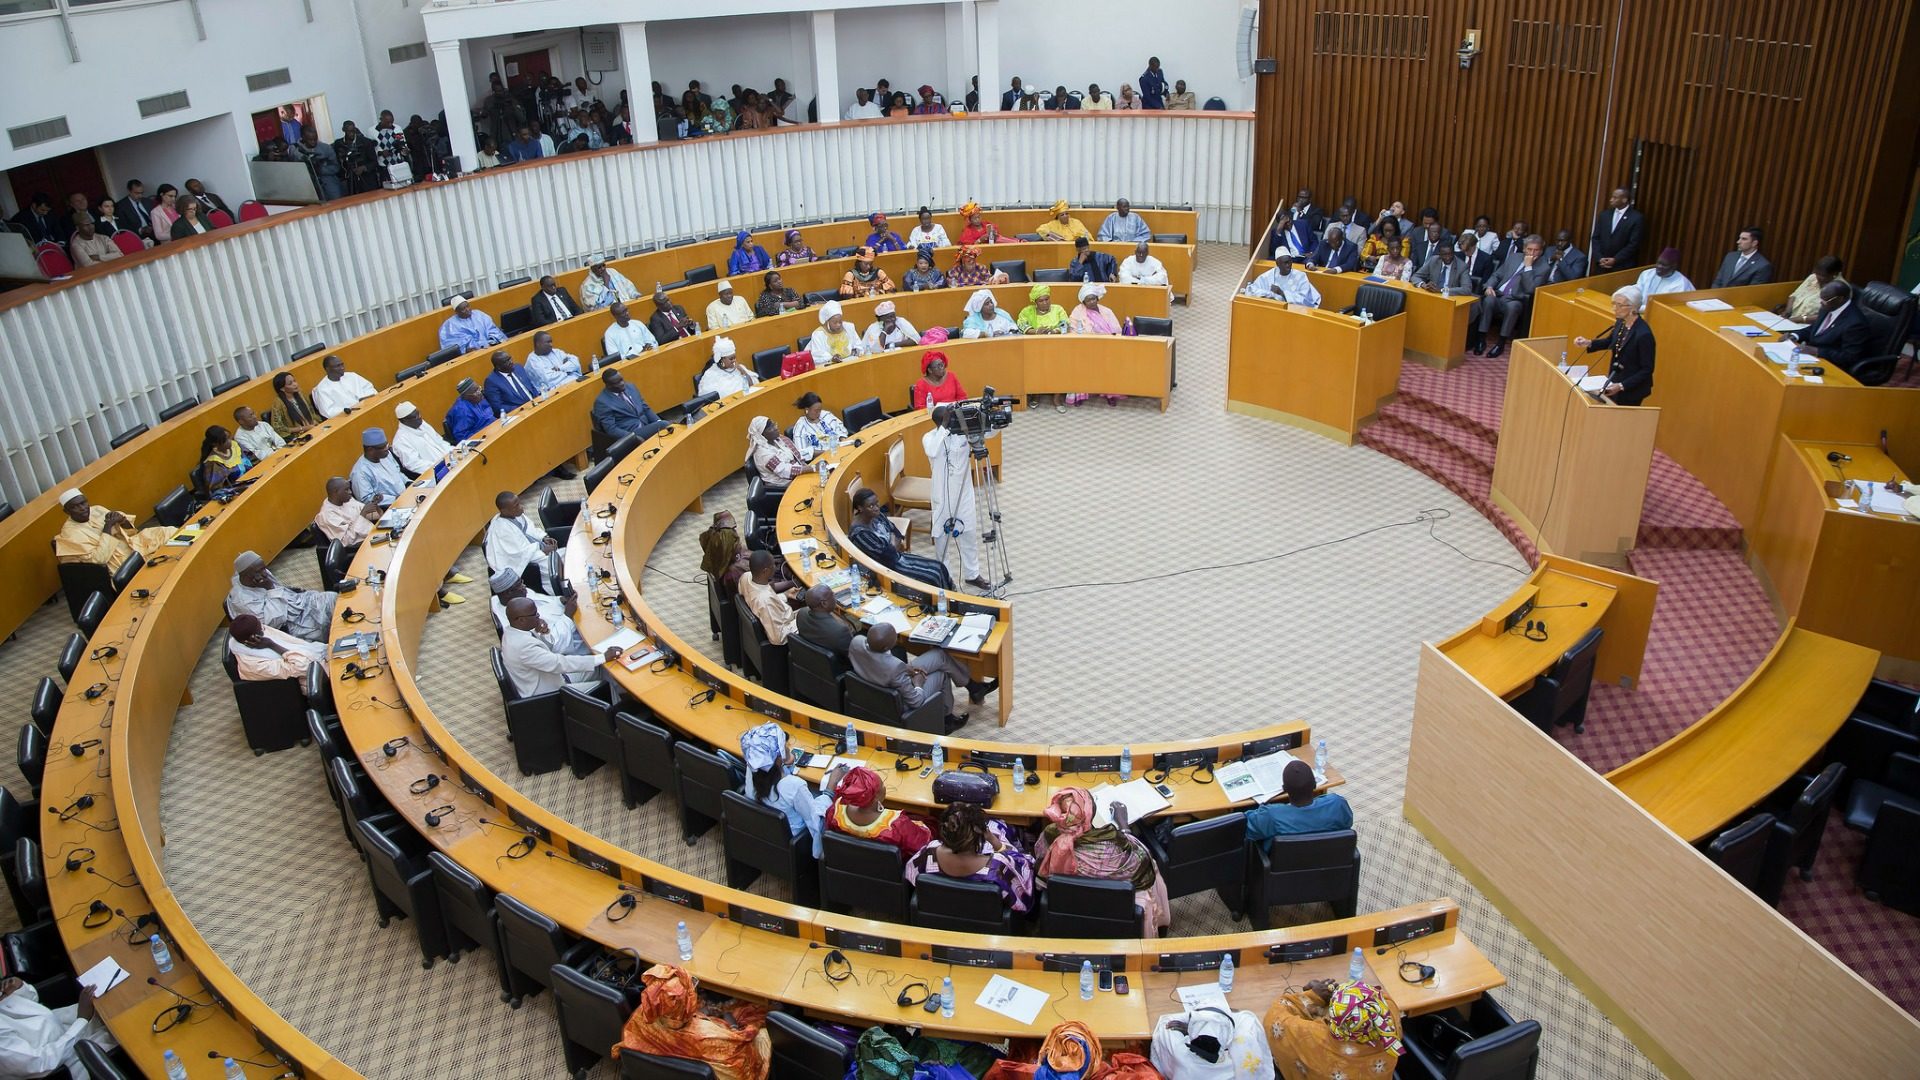 Les oulémas mettent garde le parlement sénégalais contre le vote d'une loi légalisant l'avortement. (Photo: Flickr/Stephen Jaffe-IMF/CC BY-NC-ND 2.0)